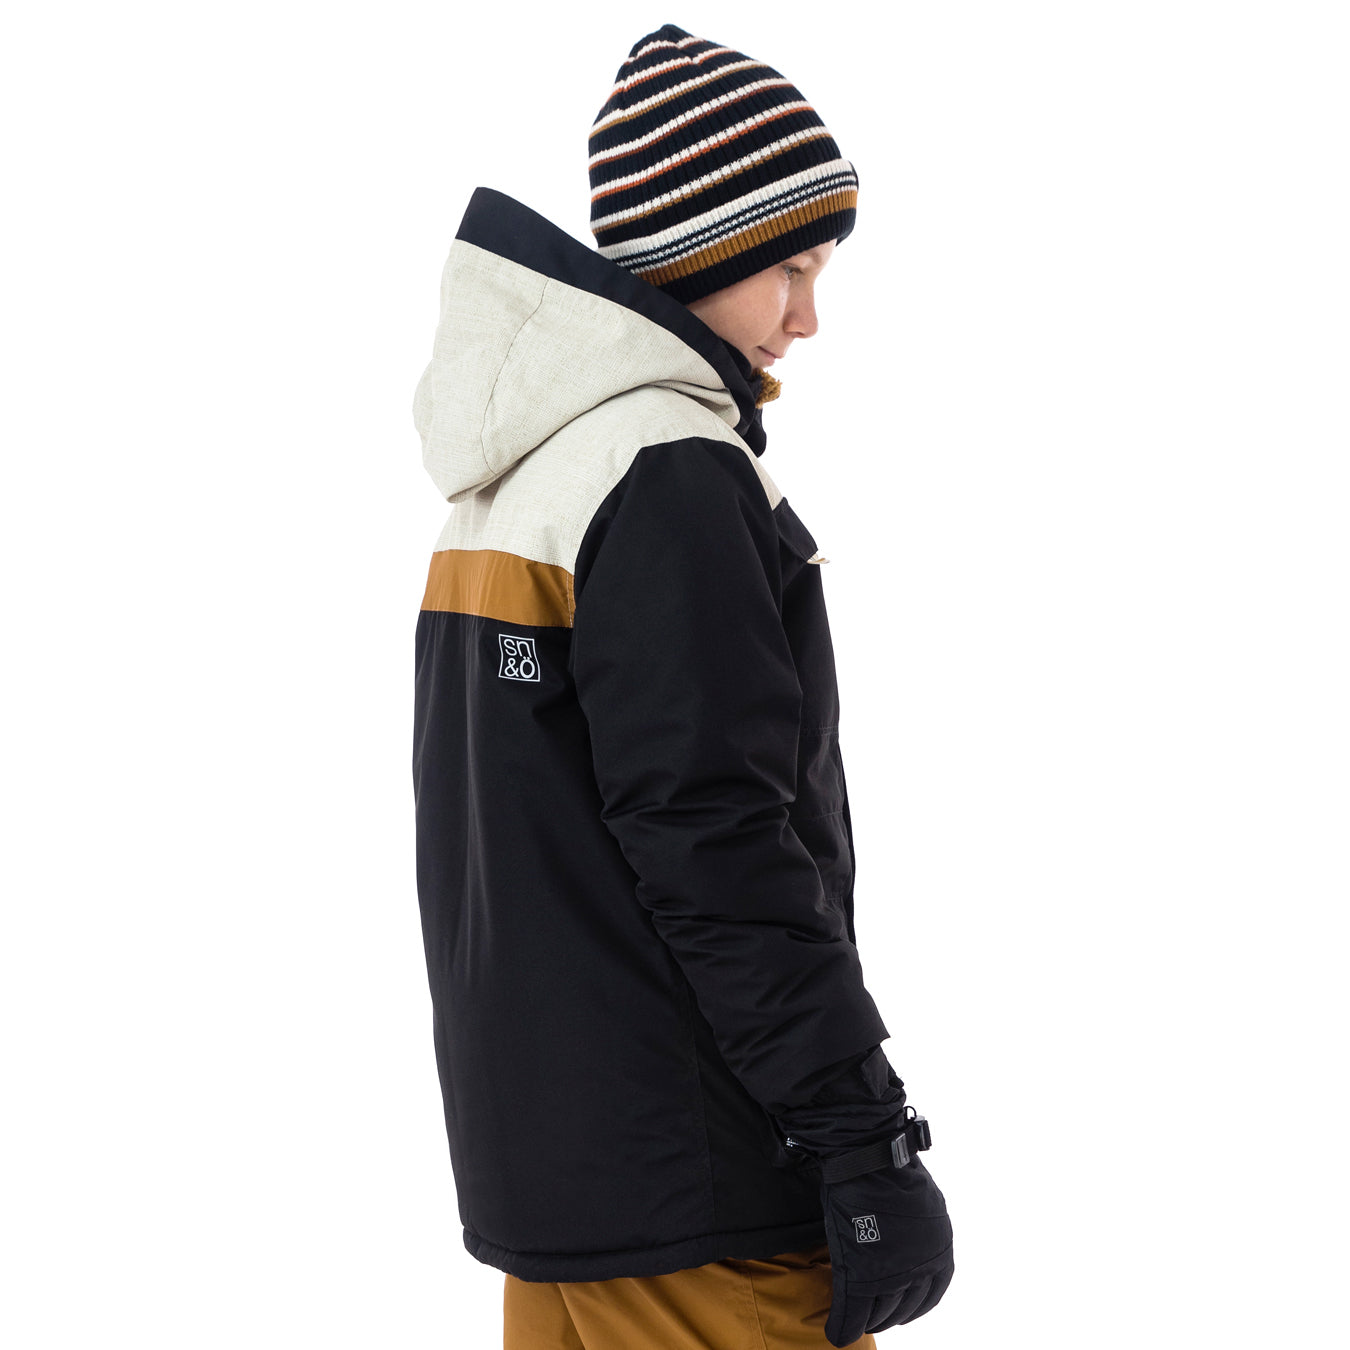 Manteau d'hiver pour enfant garçon par Snö | F21M317 black | Boutique Flos, vêtements mode pour bébés et enfants